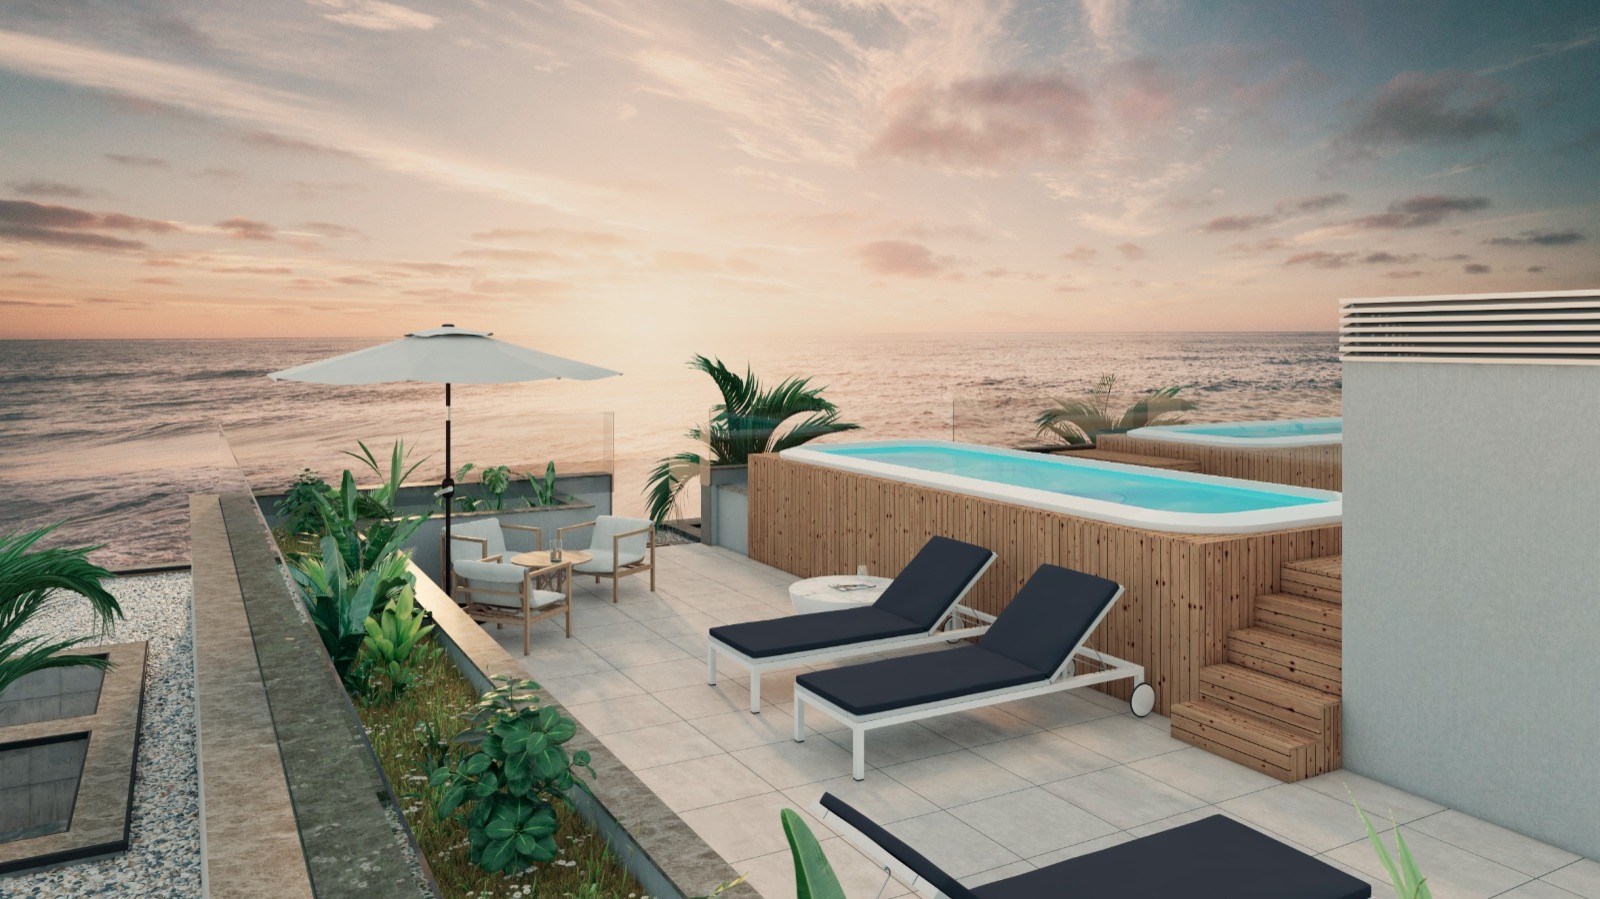 Apartamento T2 com vista de mar, terraço e piscina, para venda, Gaia_250373